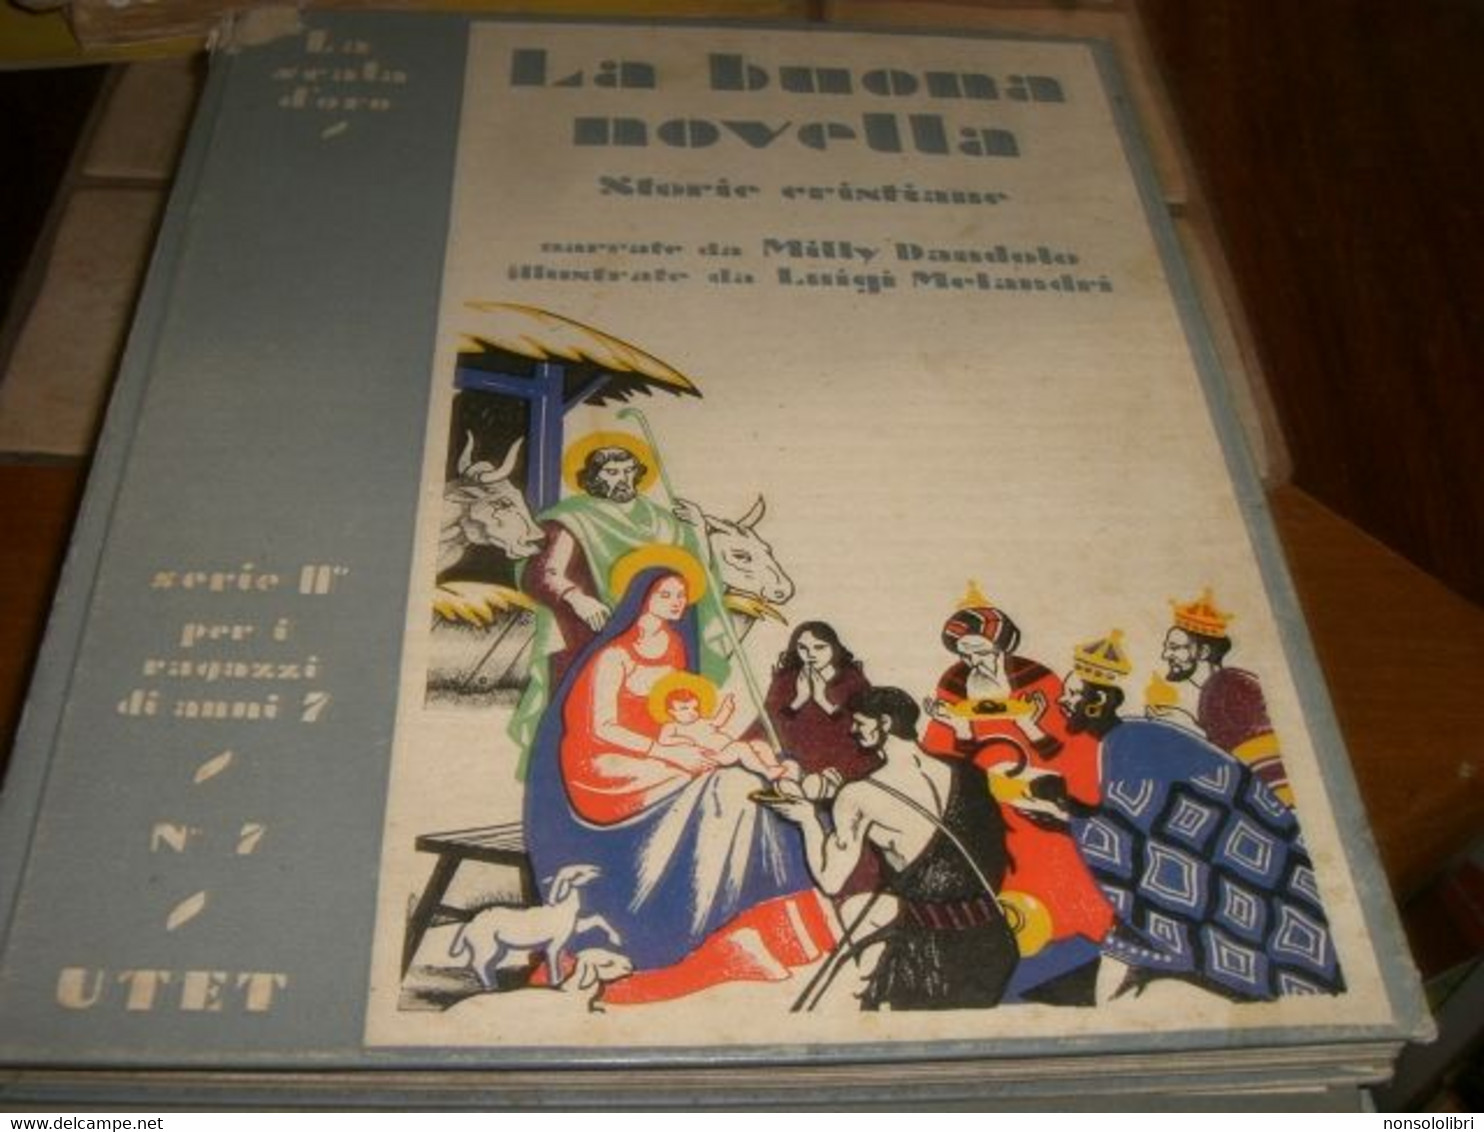 LIBRO "LA BUONA NOVELLA " SCALA D'ORO-SERIE II N.7 PER I RAGAZZI DI ANNI 7-ILLMELANDRI 1933 -COPERTINA RIGIDA - Novelle, Racconti